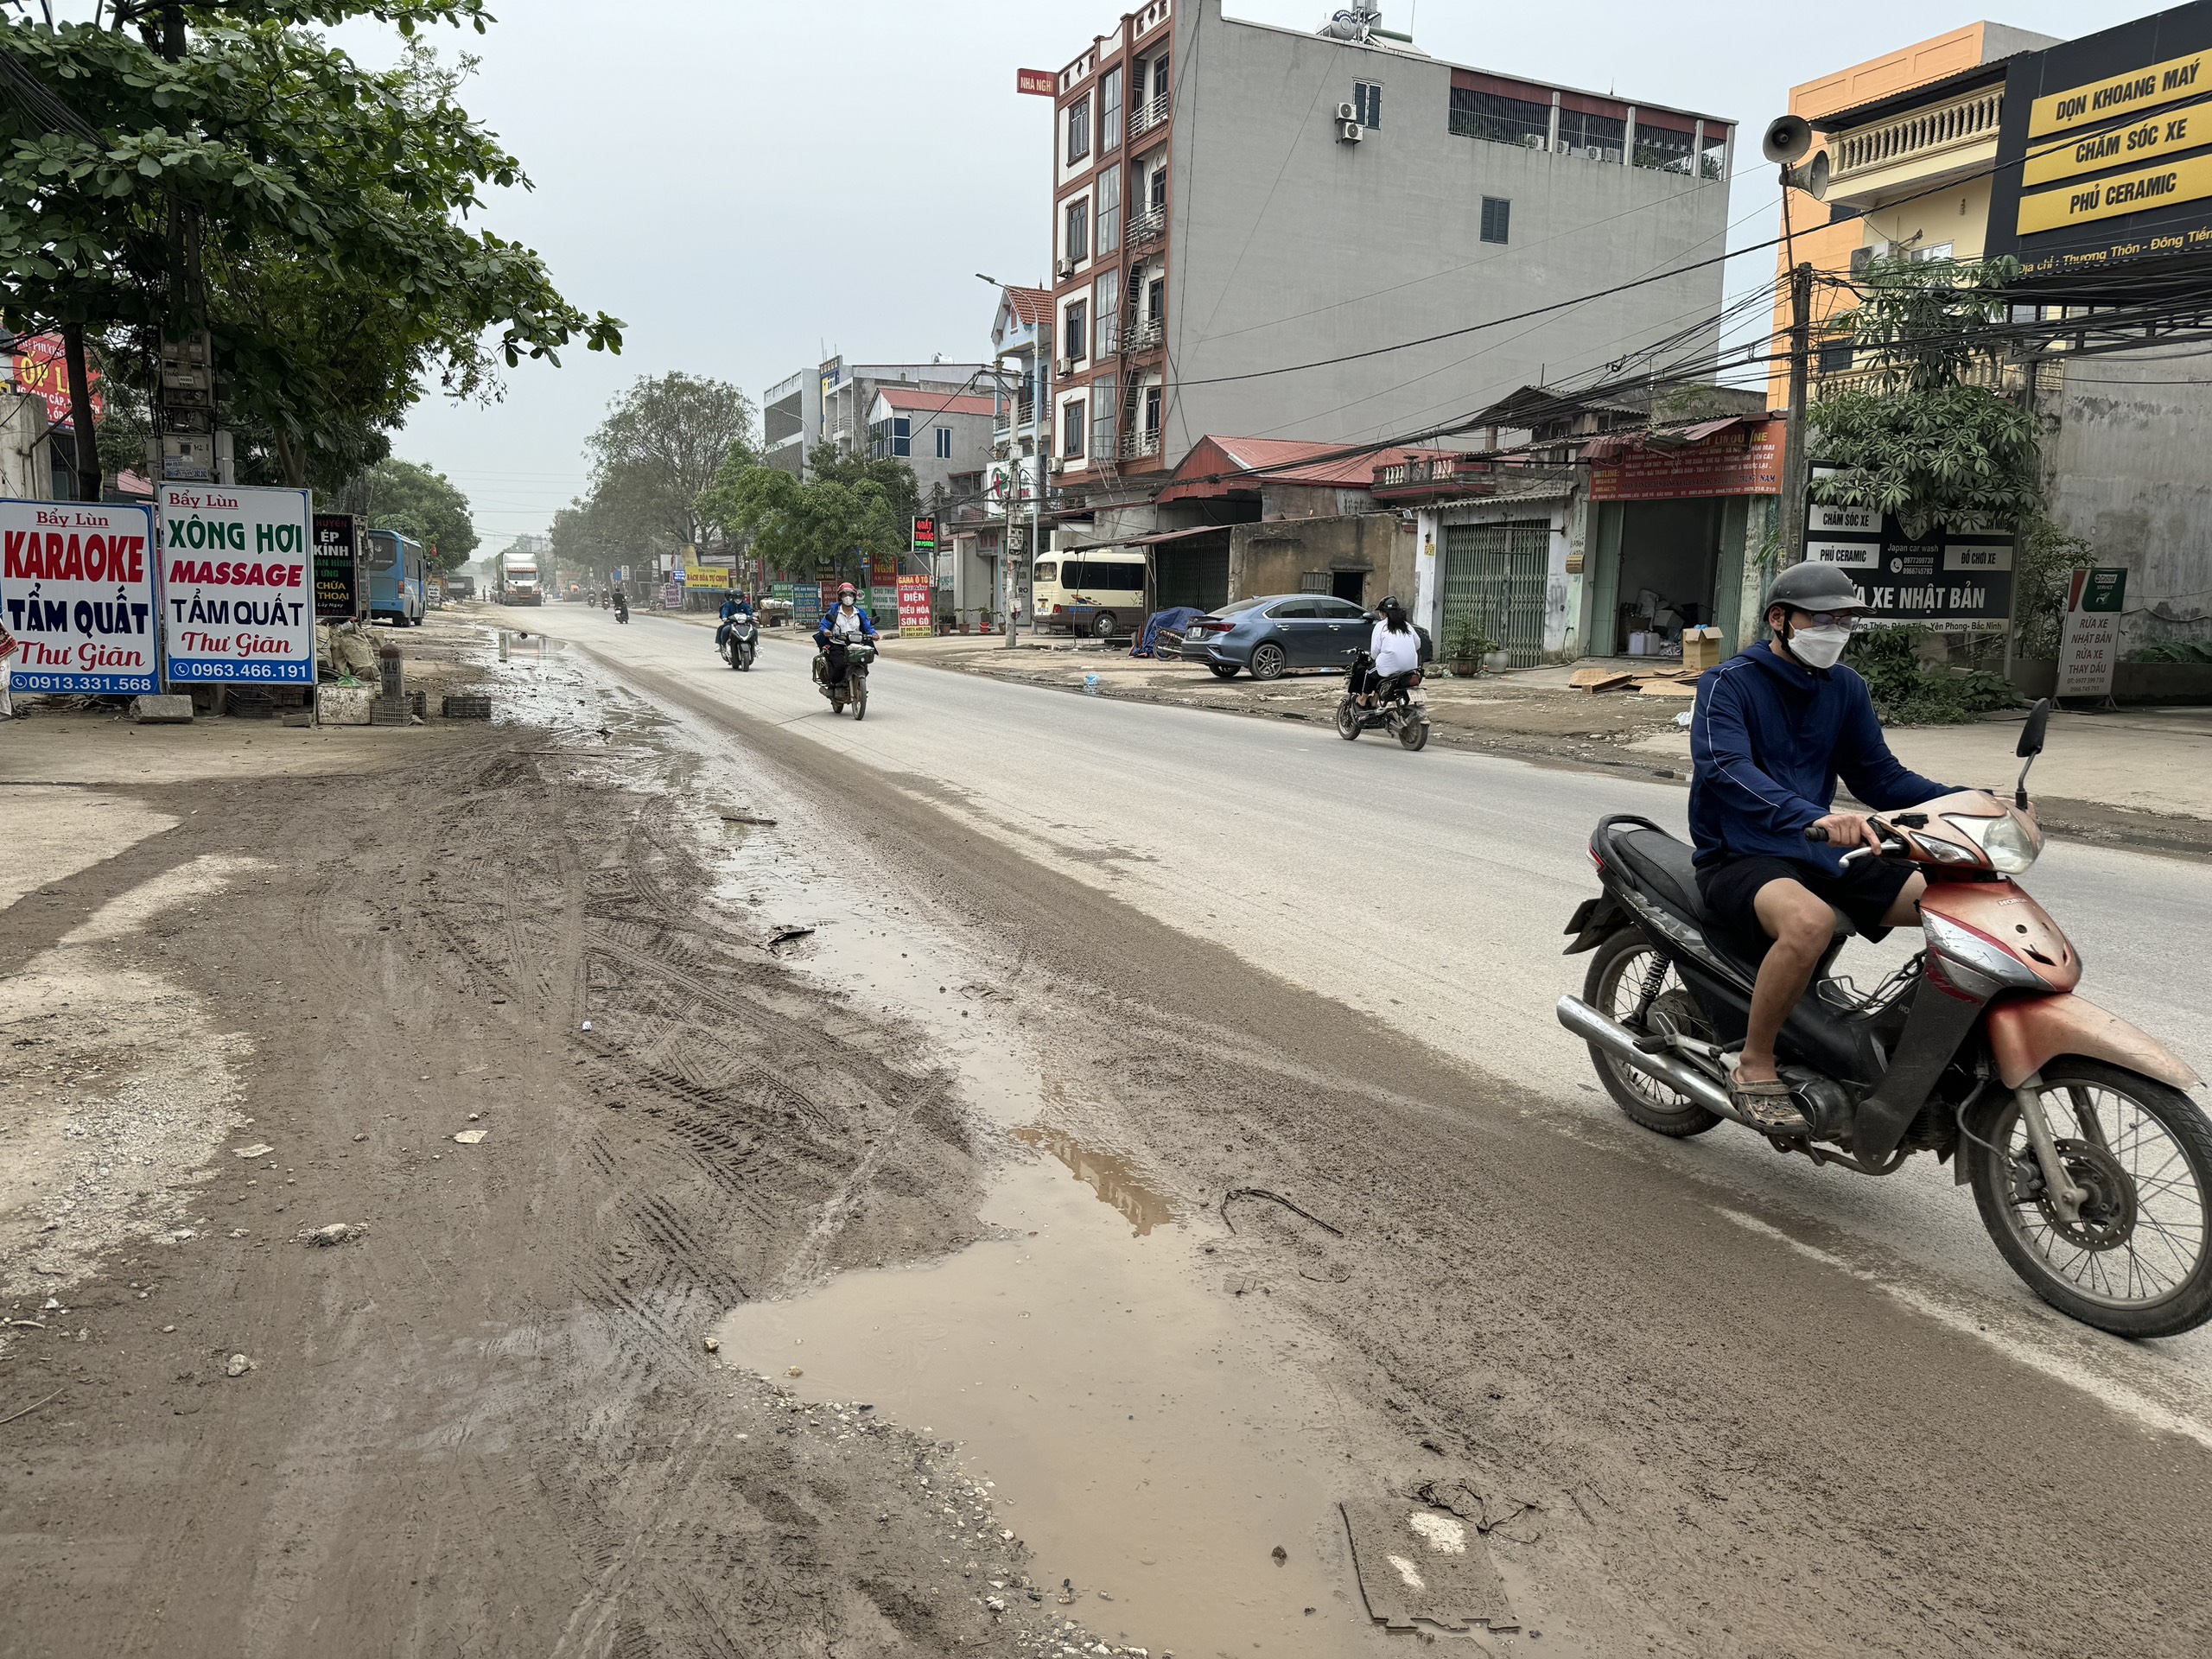 Bắc Ninh: Dự án cải tạo Tỉnh lộ 295 địa bàn huyện Yên Phong, vẫn là cách thi công thiếu an toàn- Ảnh 5.